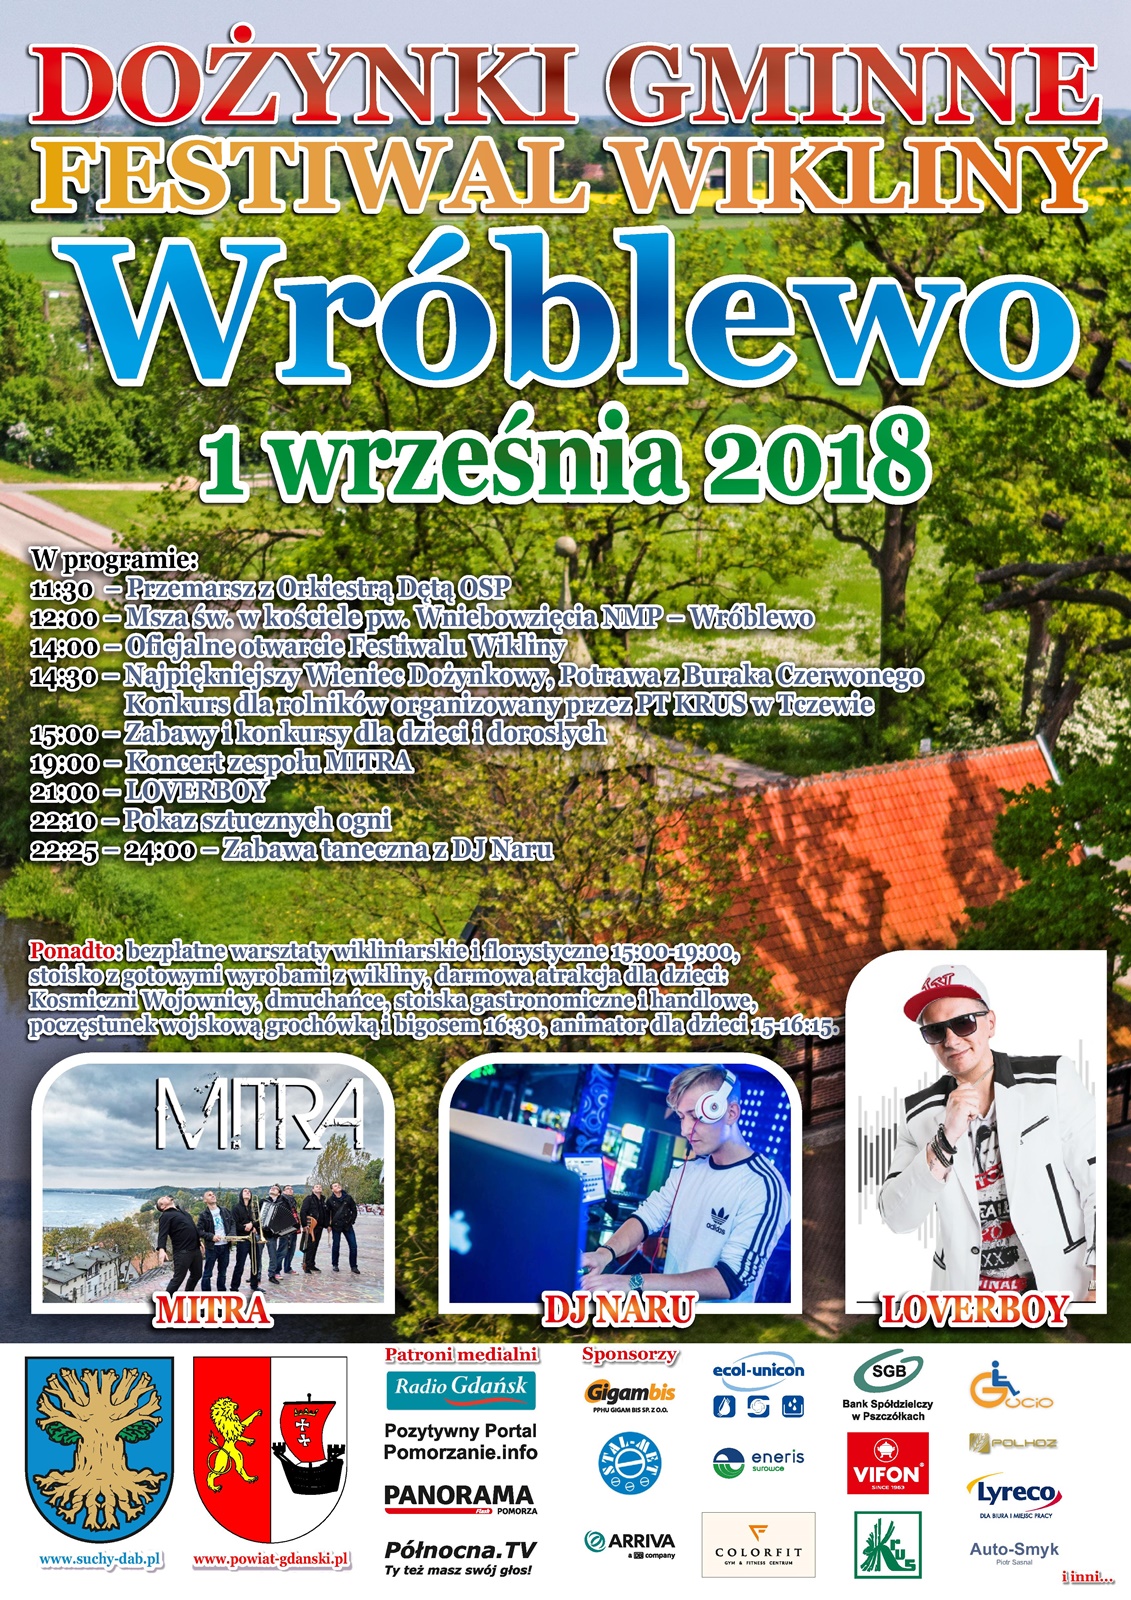 Festiwal Wikliny 2018 Dożynki Gminy Suchy Dąb!